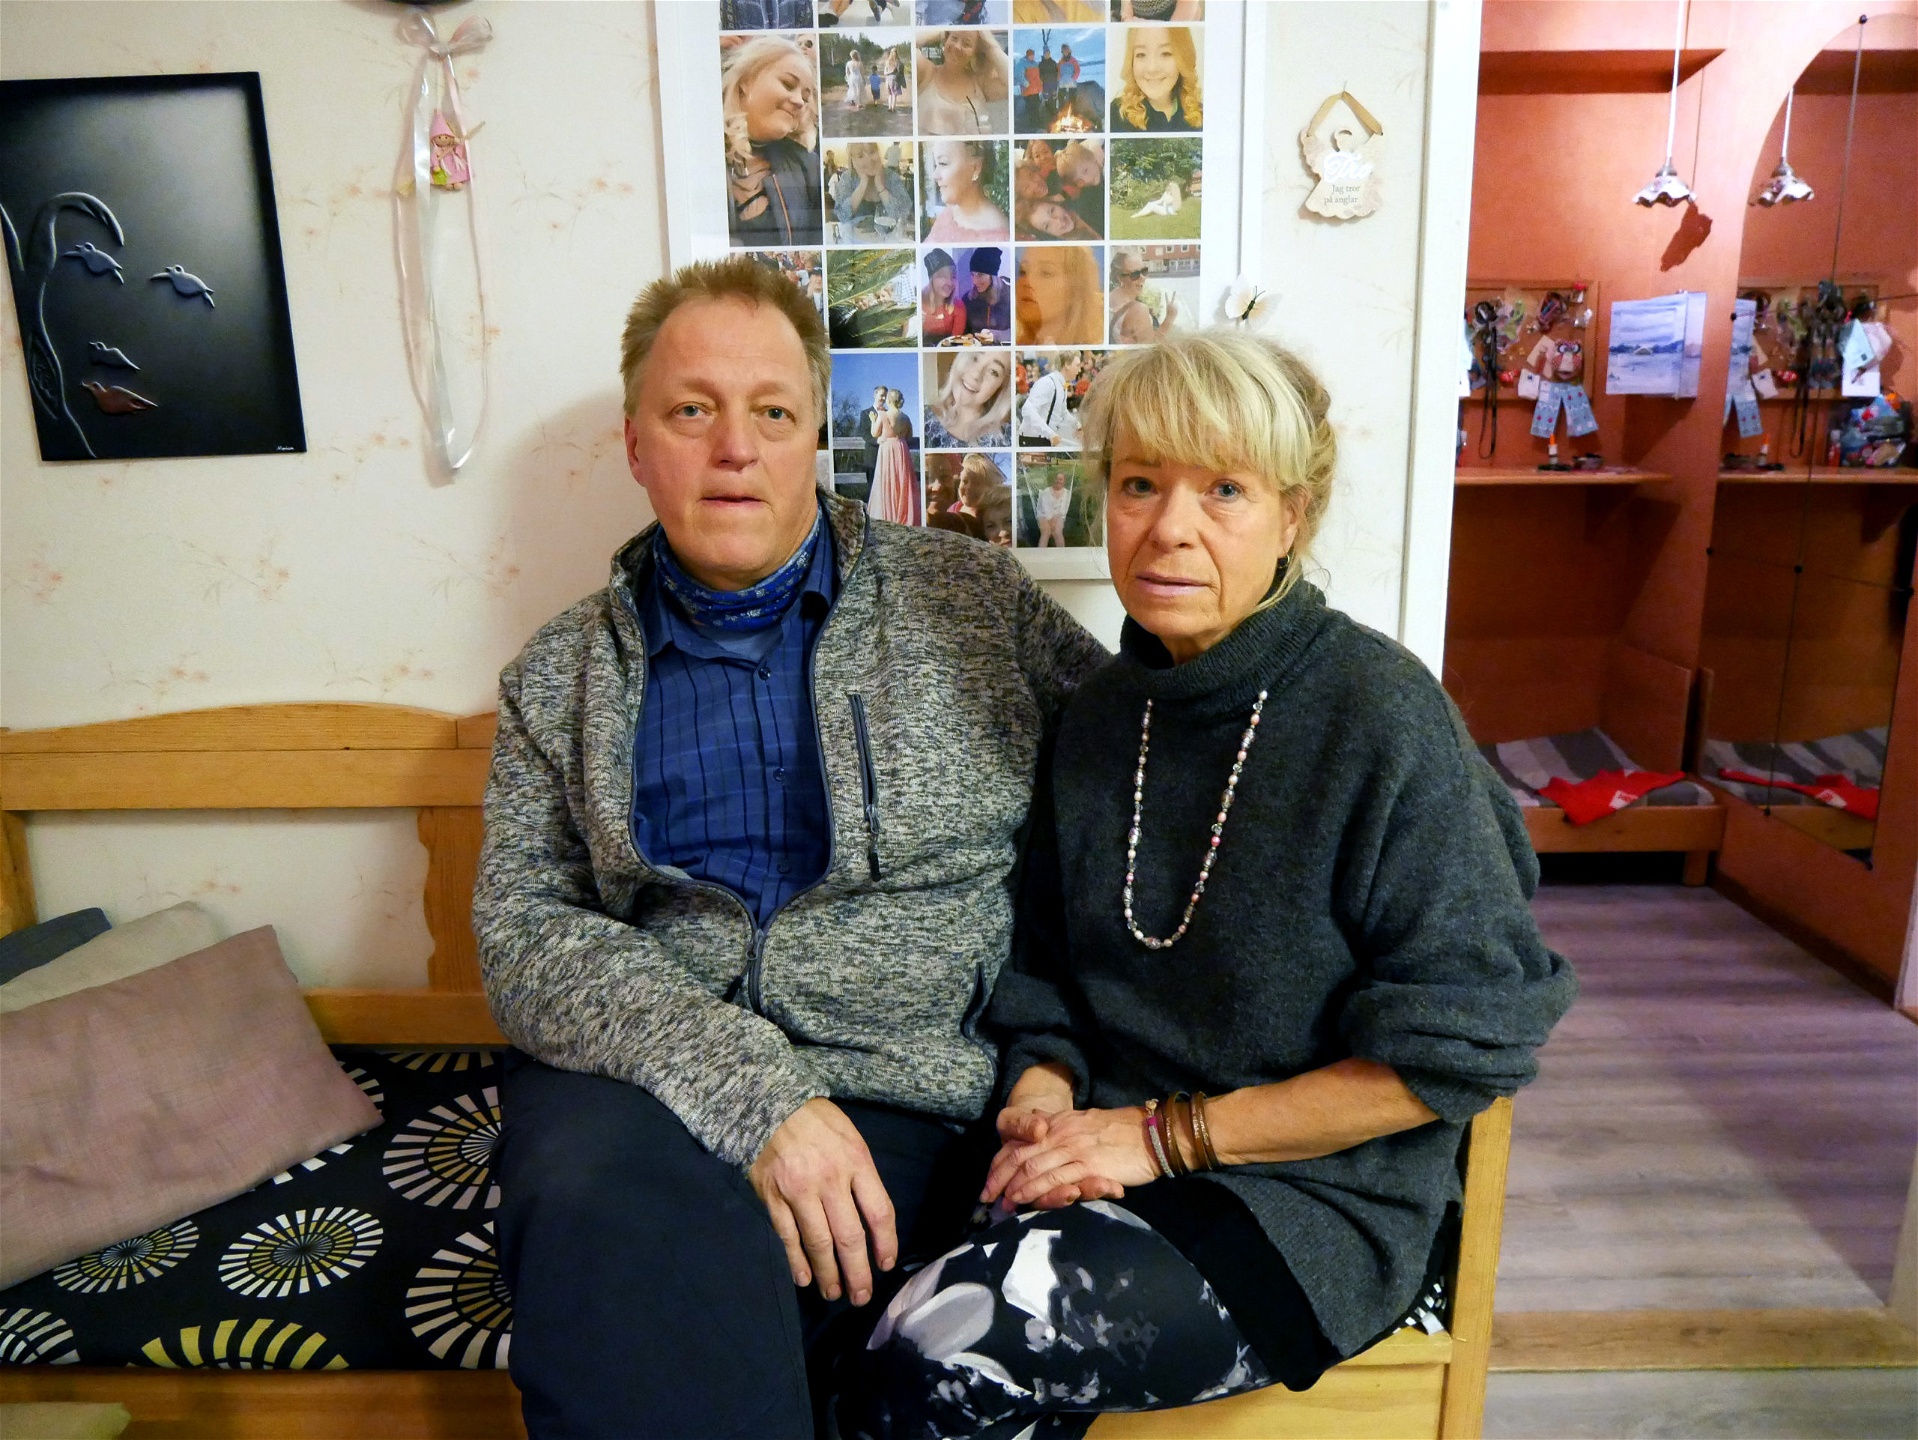 Göran och Kristina Markström miste sin dotter i dödsolyckan på LKAB den 27 juli 2018. De upplever att uppföljning och kontakt med företaget varit bristfällig.